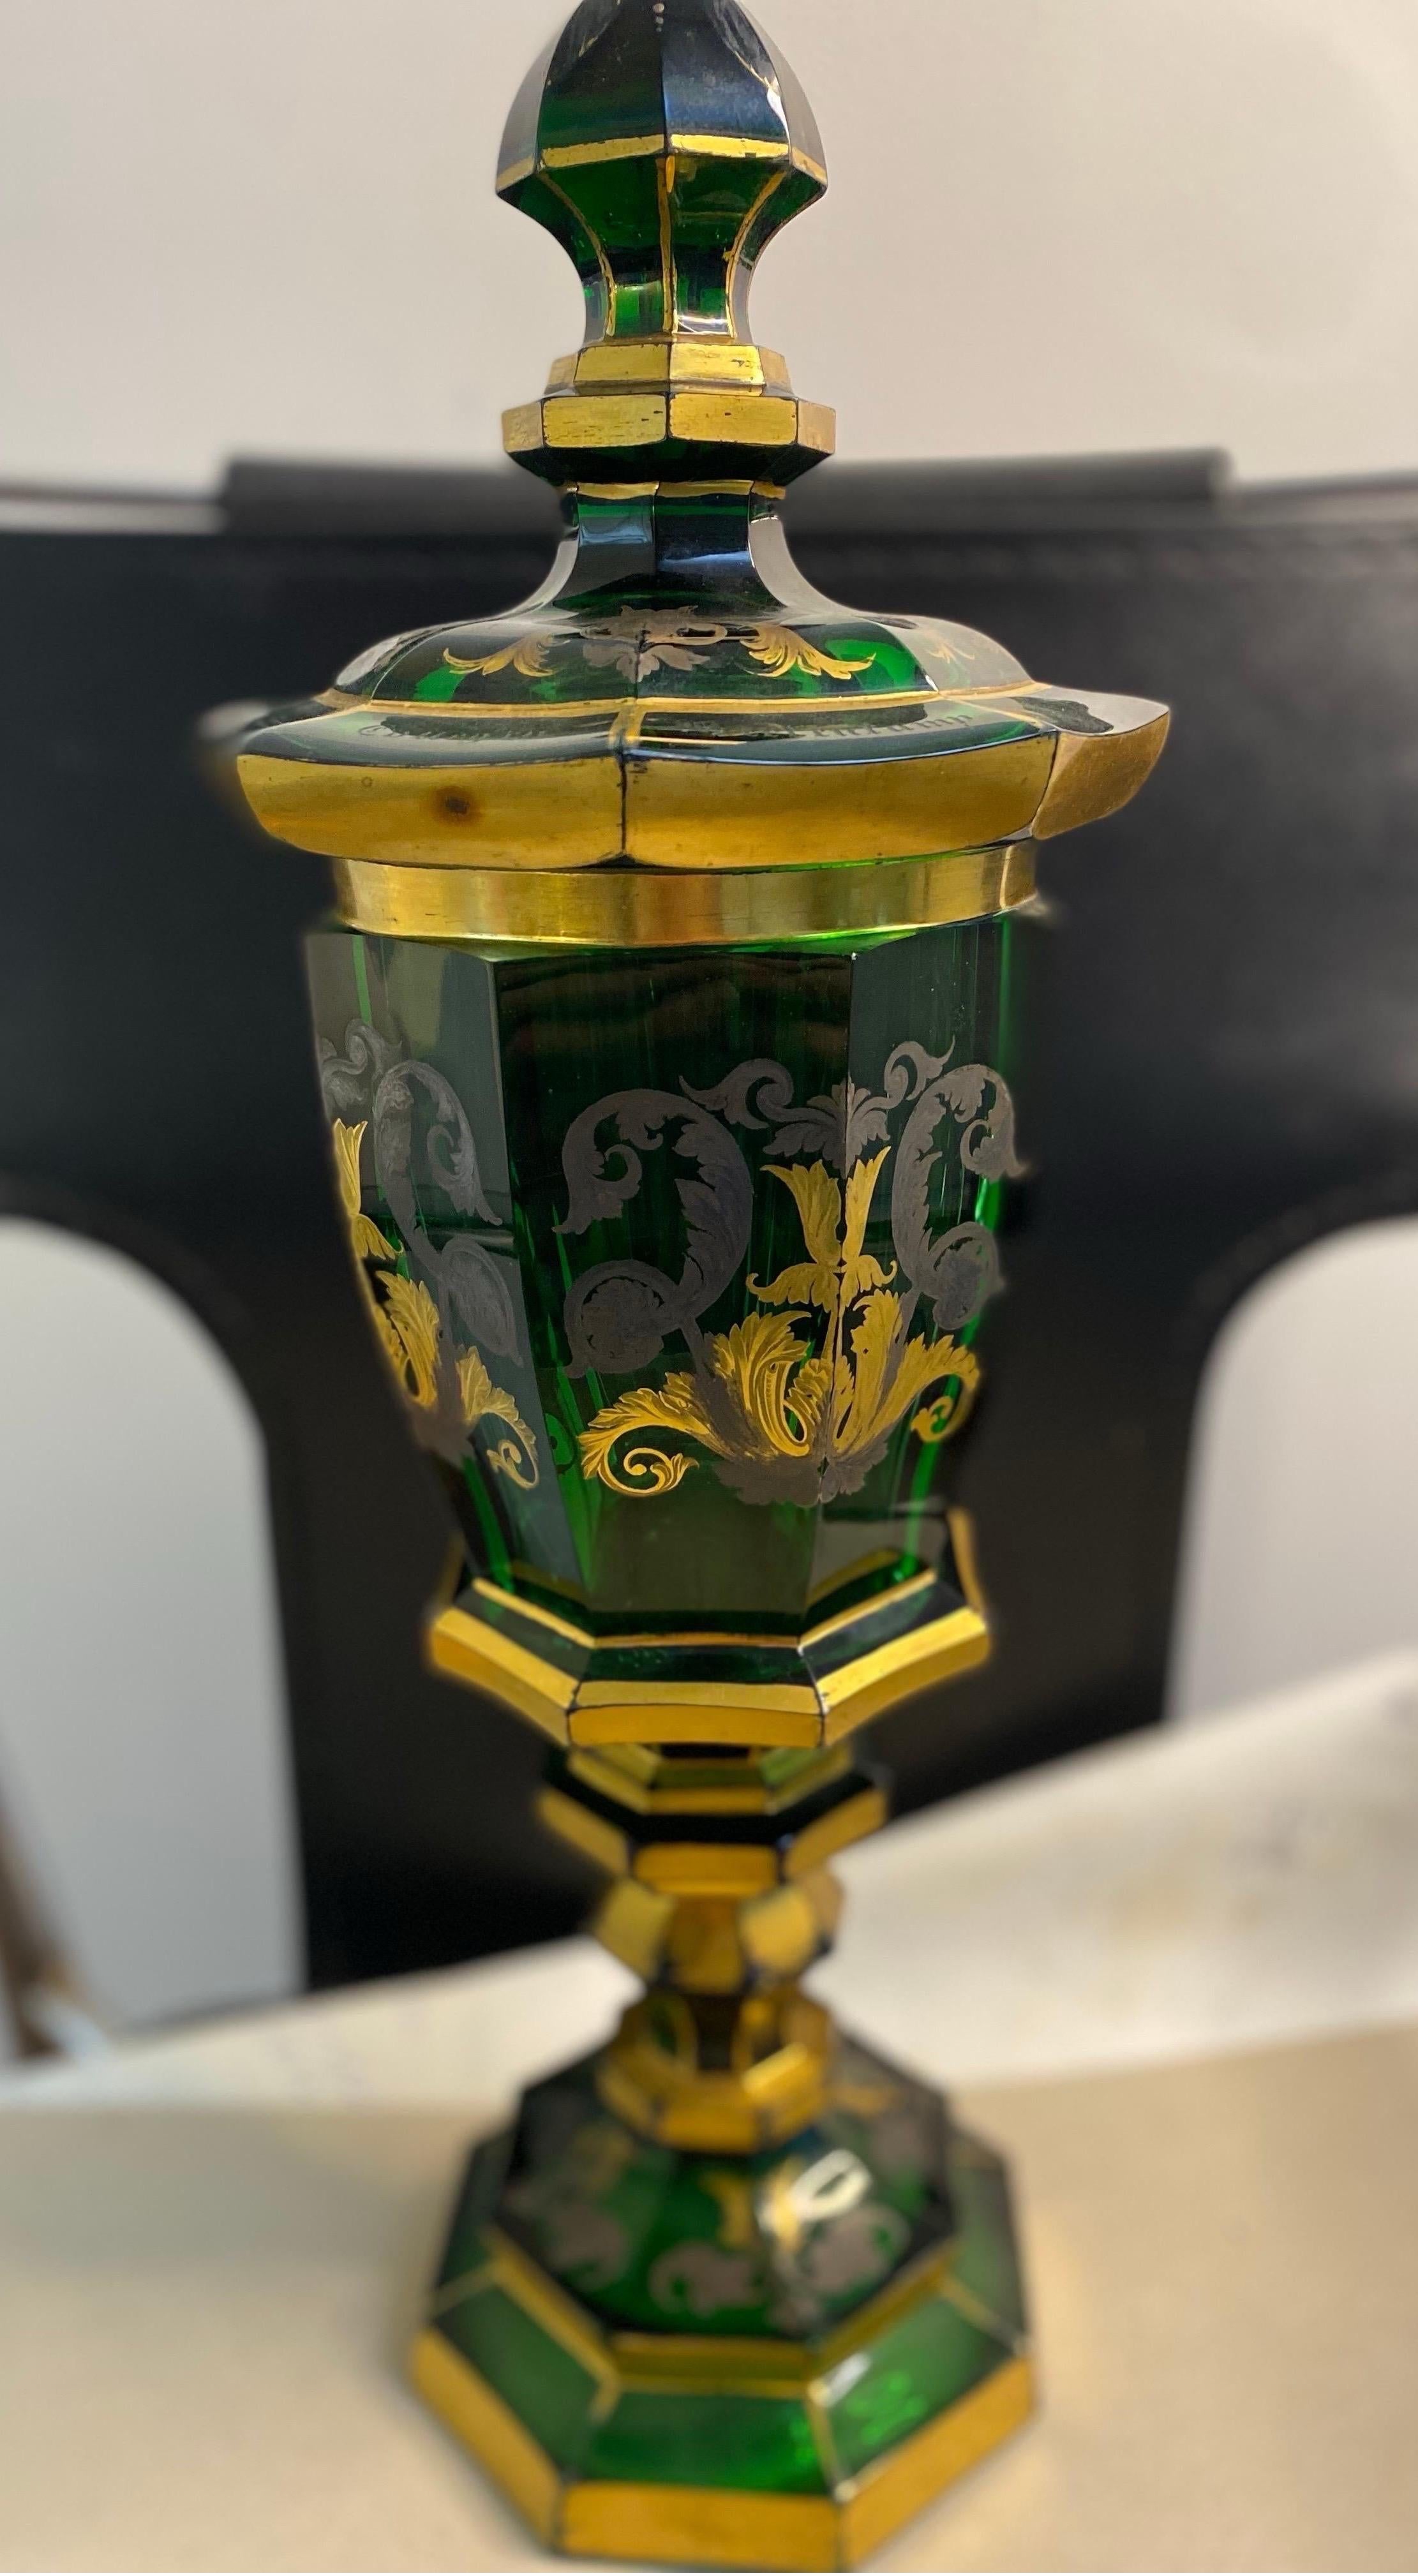 Kristallpokal aus dem 19. Jahrhundert 
Farbe:Grün,Gold
Dieser außergewöhnliche Kelch ist aus smaragdgrünem Kristall gefertigt und mit goldenen Blumen verziert.
Gravur auf dem Deckel des Bechers 
Jahr: 1841




